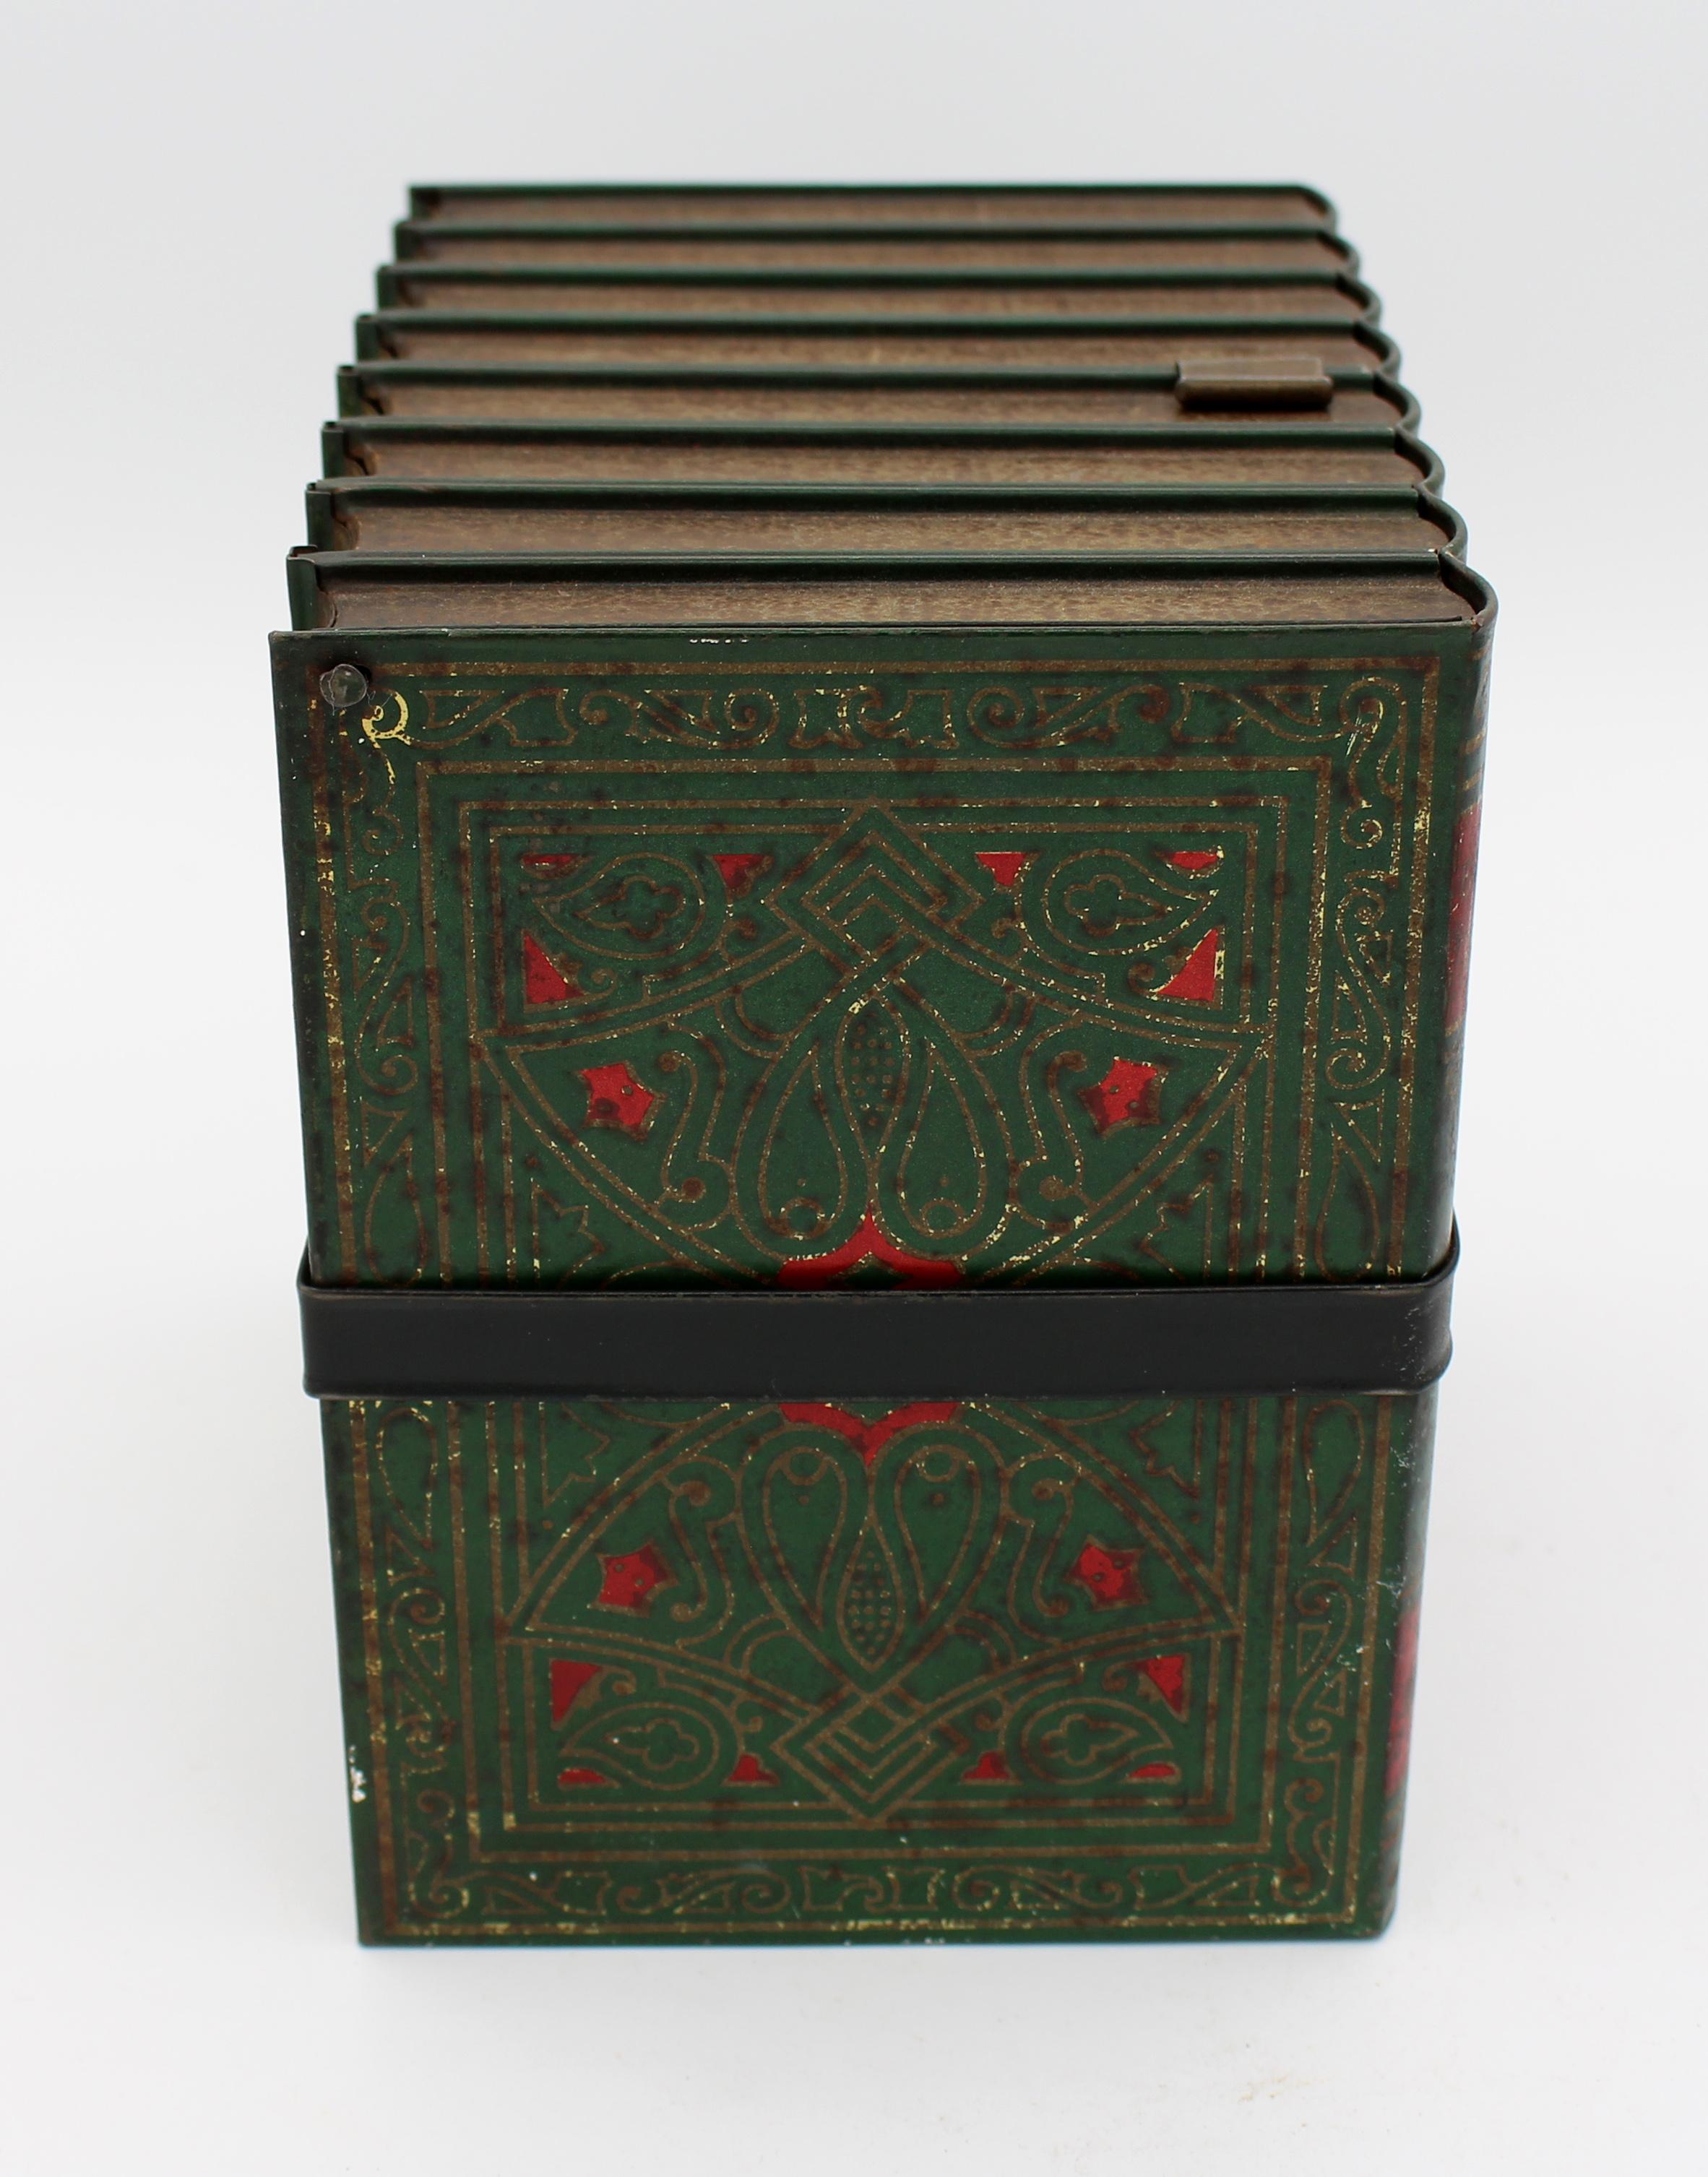 Faux Books Keksdose von Huntley & Palmers, 1911, Englisch. In Form einer umgeschnallten Gruppe von Romanen von Charles Dickens in alter grüner und roter Farbe mit Goldschmiedearbeit und schwarzem Band. Insgesamt alters- und gebrauchsgemäße